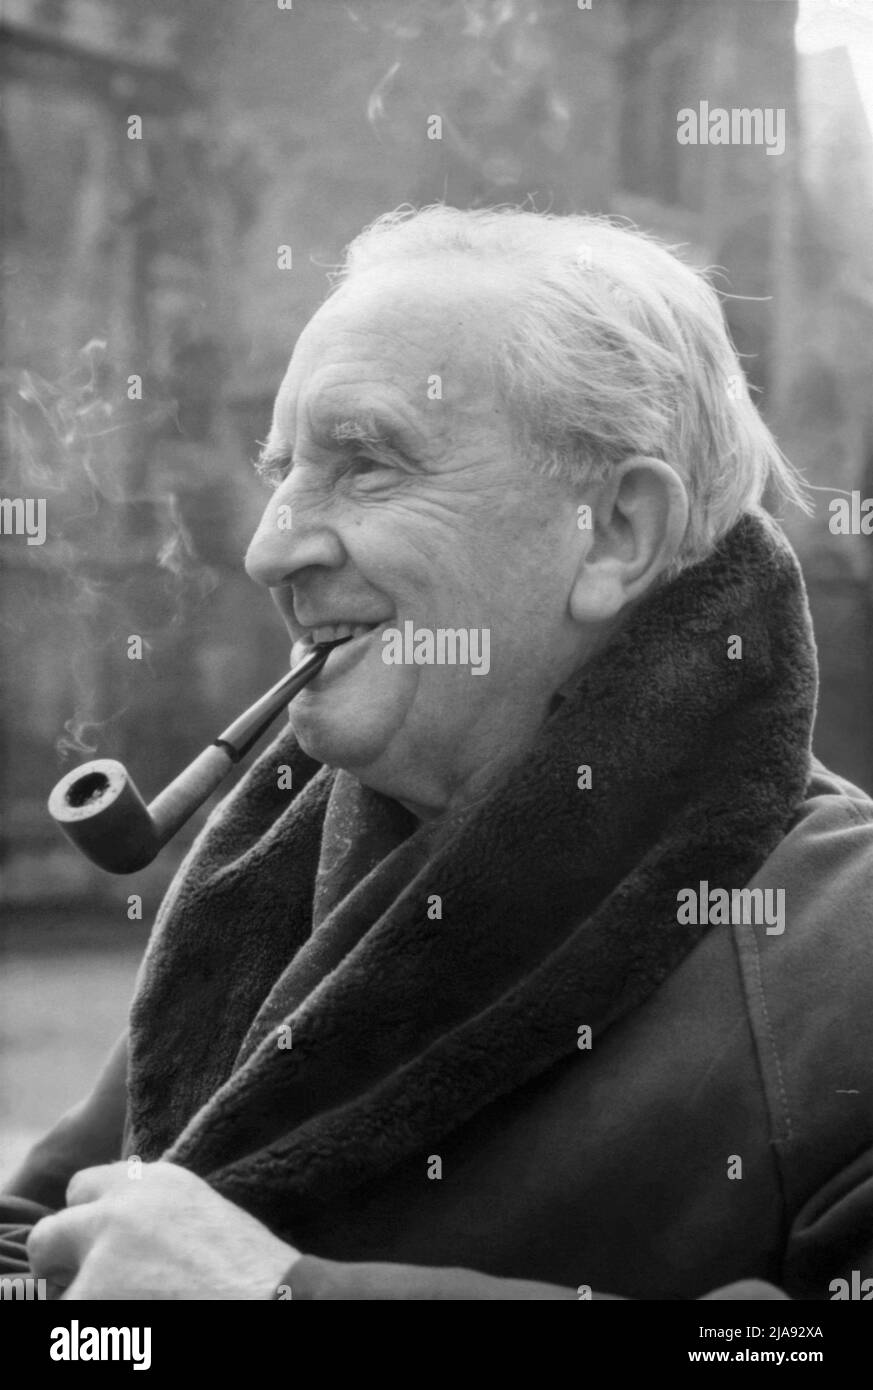 J.R.R. Tolkien (1892-1973), profesor de Oxford, filólogo, y autor británico de obras clásicas de ficción como el Hobbit, el Señor de los Anillos, y el Silmarillion. (Foto: Febrero de 1968) Foto de stock